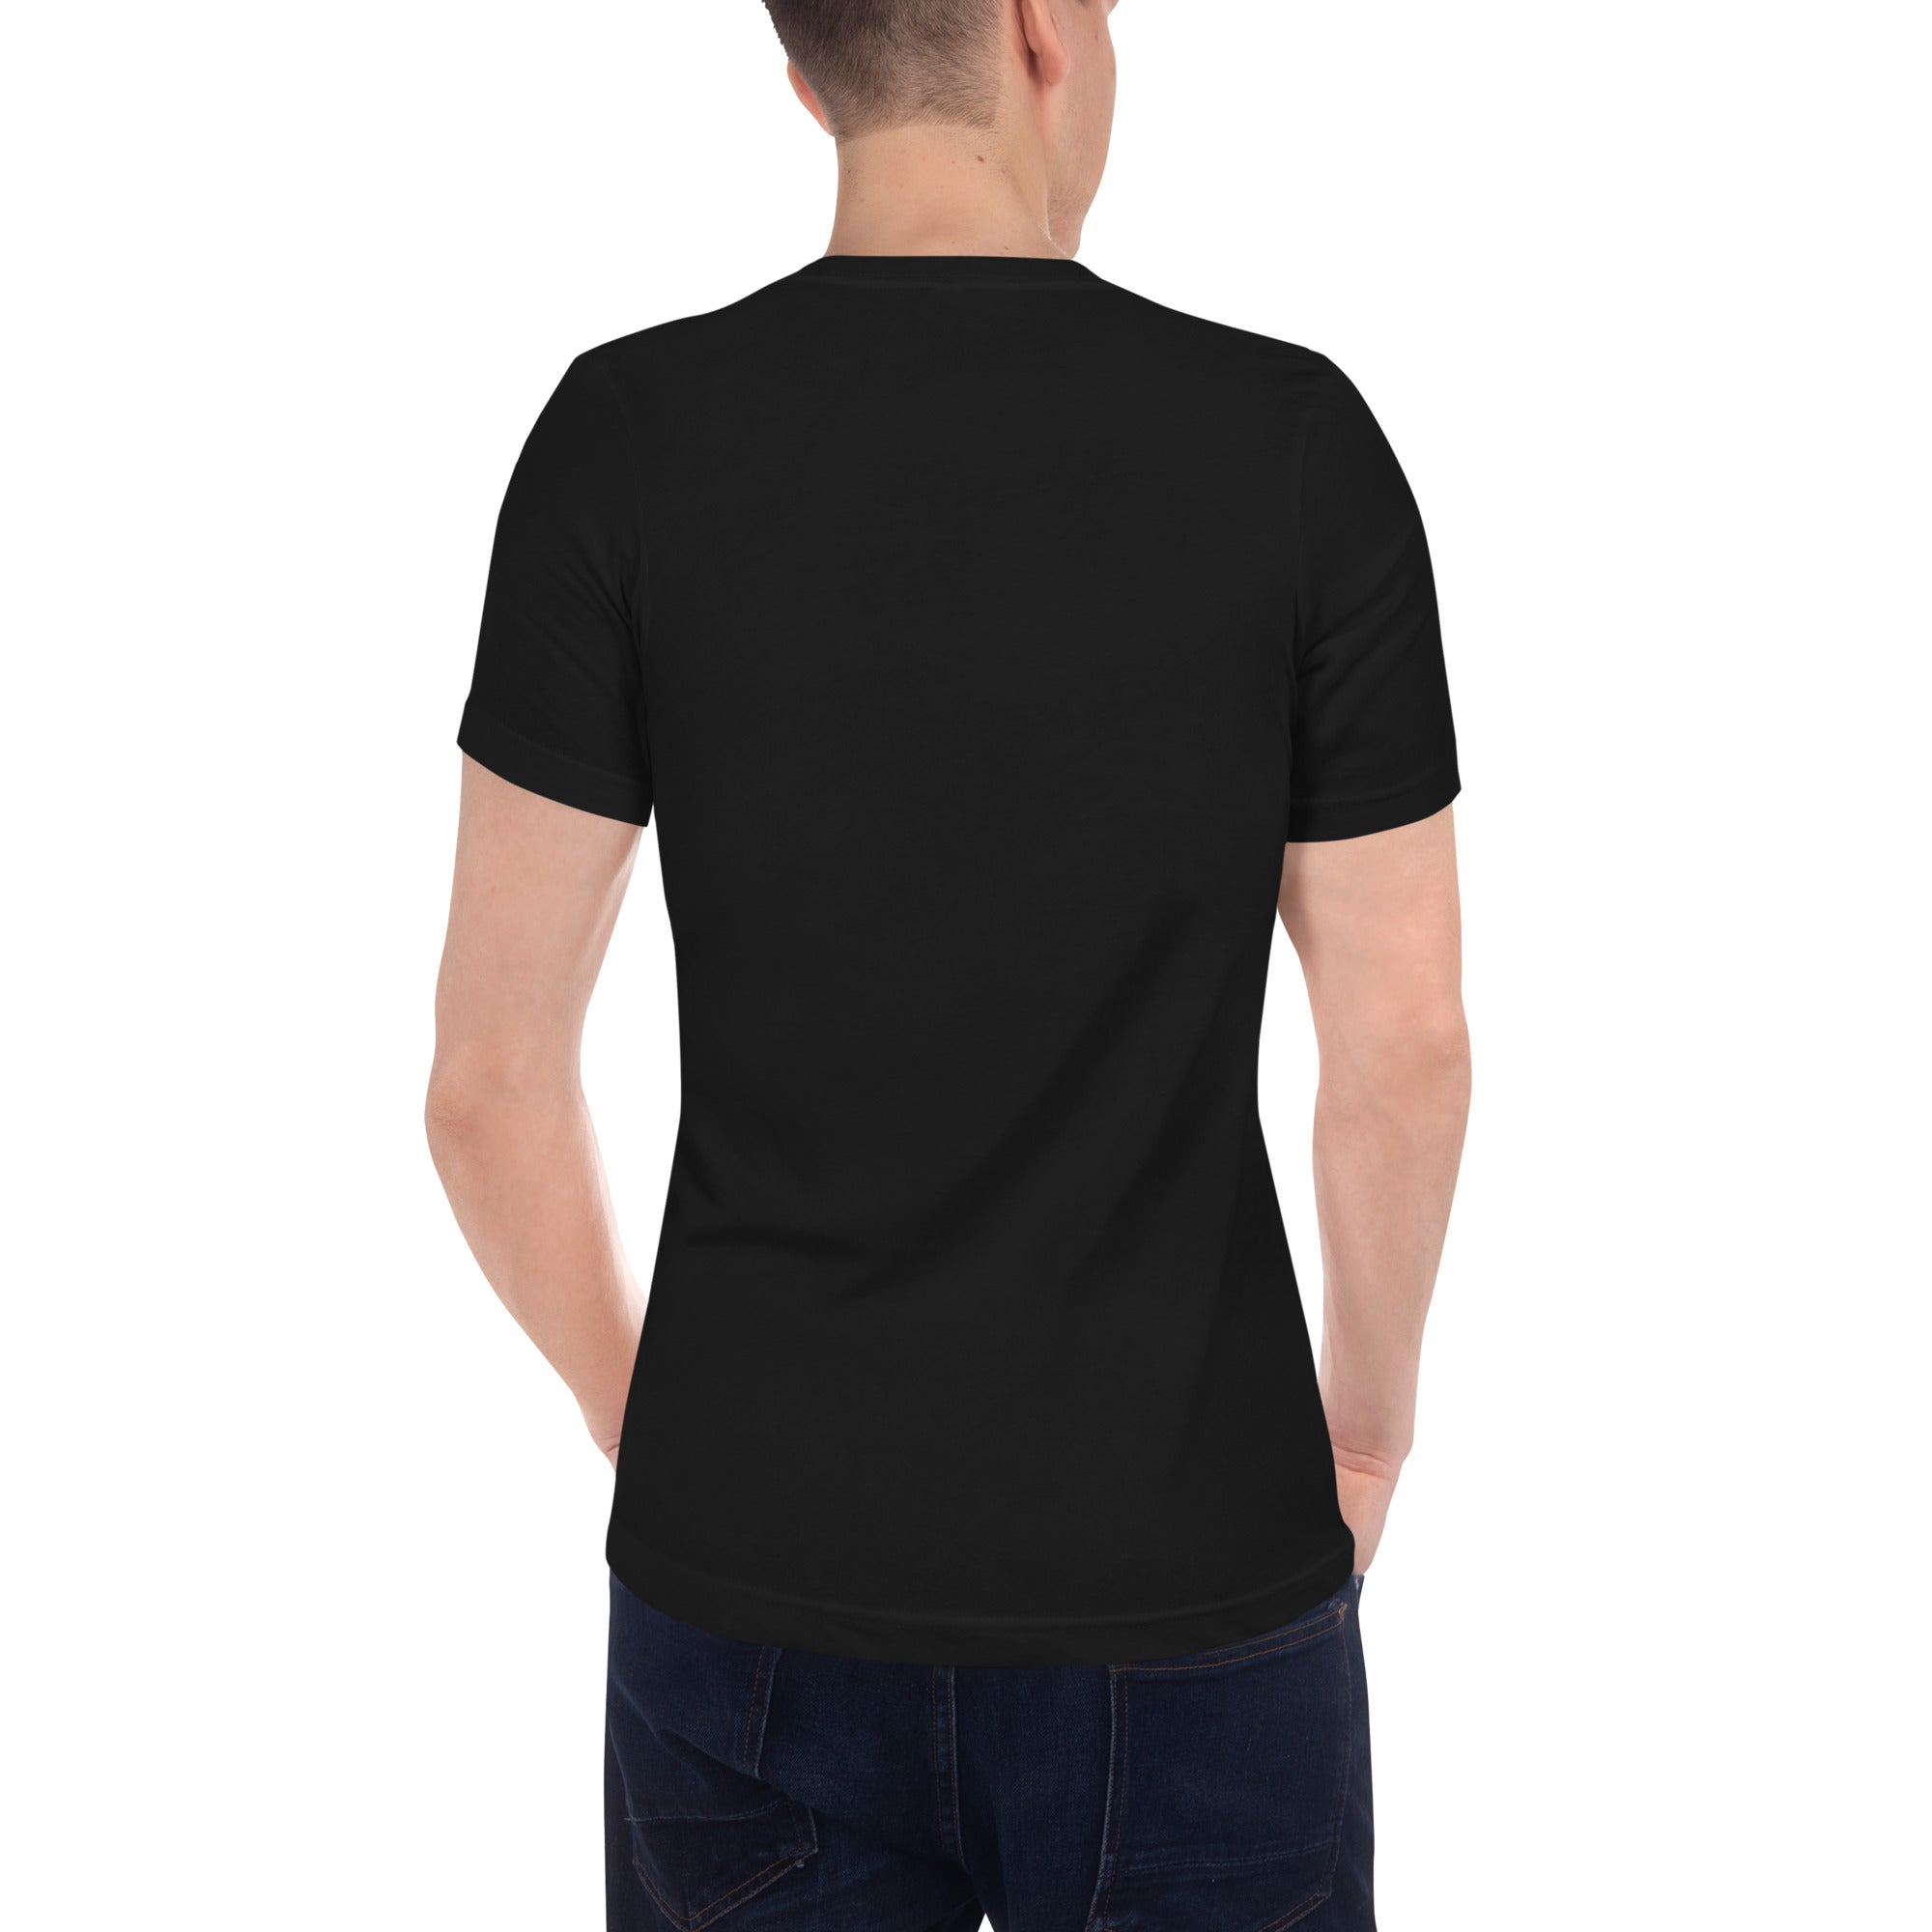 3 Heart Meter Retro 8 Bit Video Game Pixelated Short Sleeve V-Neck T-Shirt